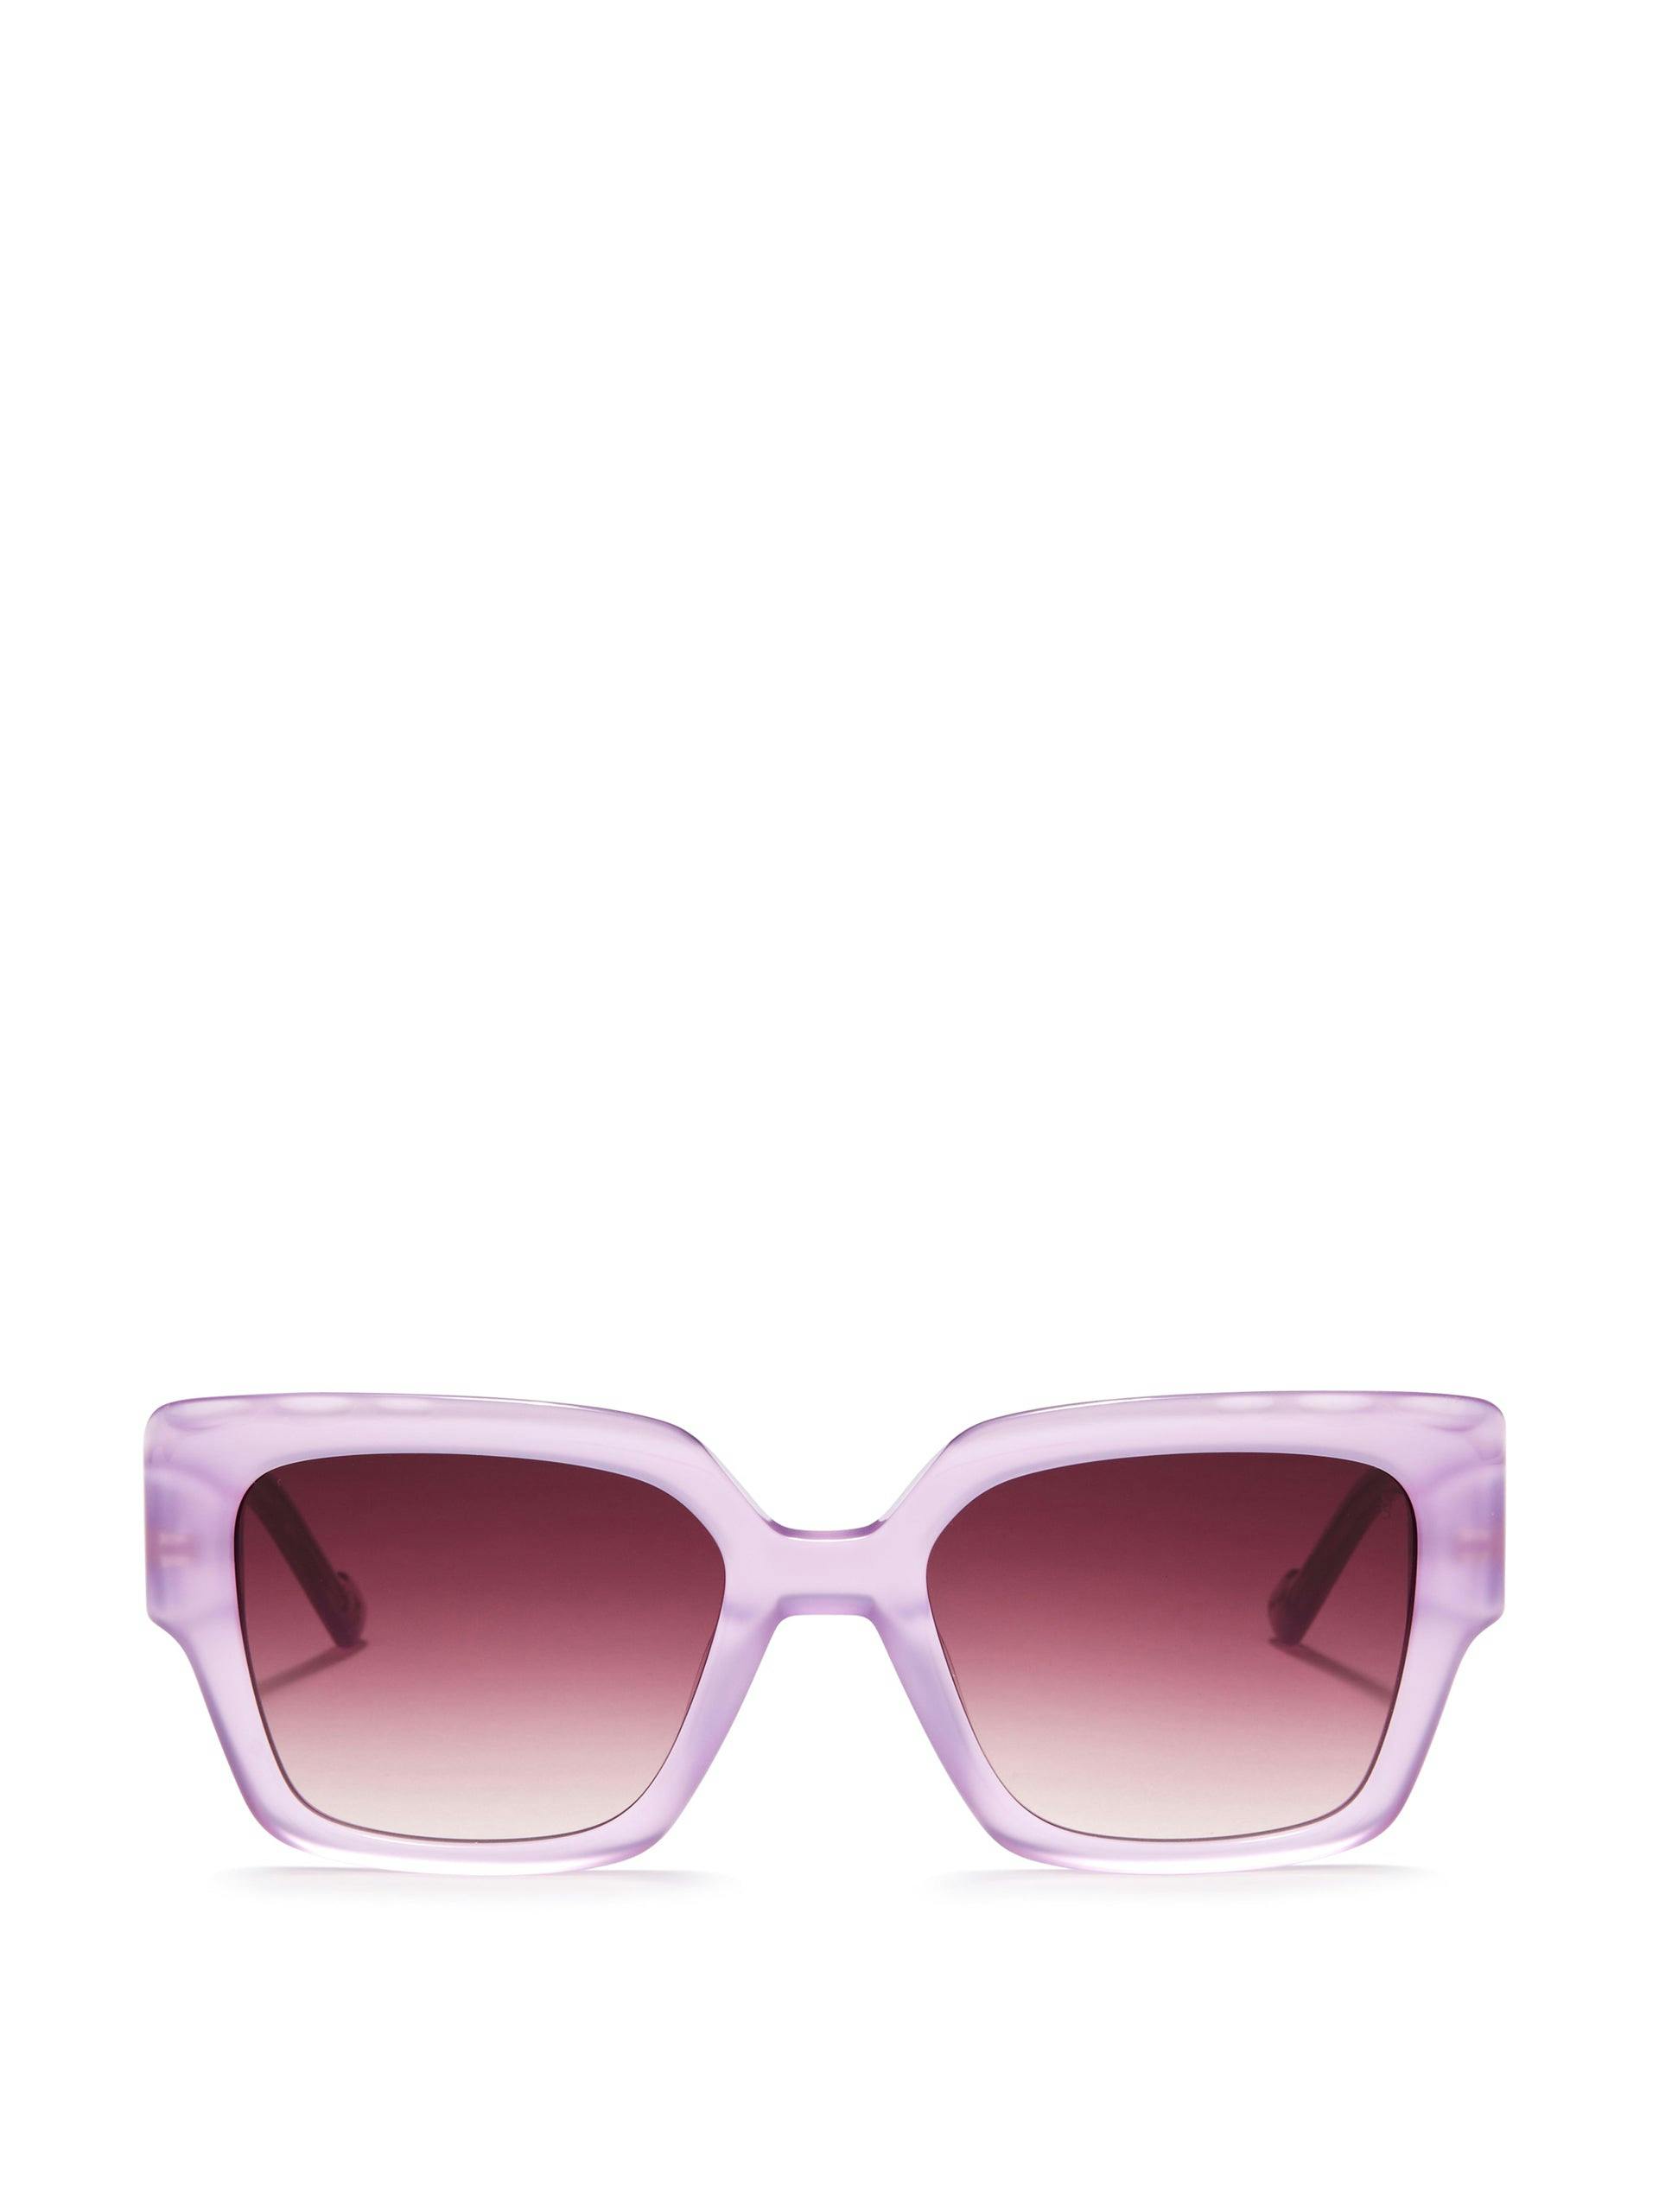 Ally sunglasses in lavender